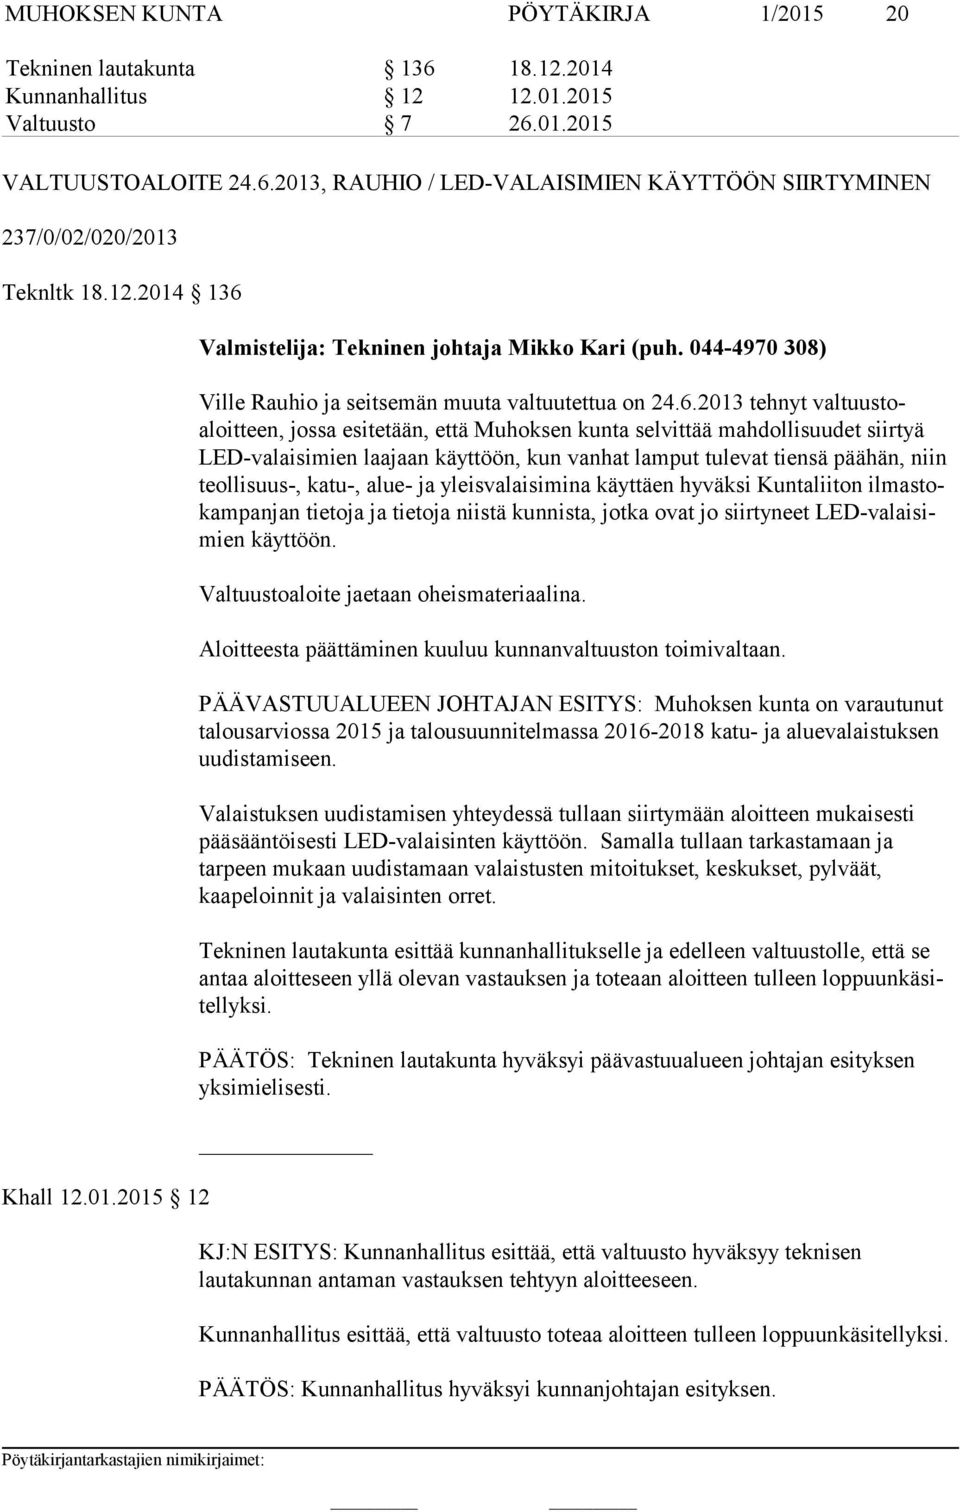 Khall 12.01.2015 12 Valmistelija: Tekninen johtaja Mikko Kari (puh. 044-4970 308) Ville Rauhio ja seitsemän muuta valtuutettua on 24.6.